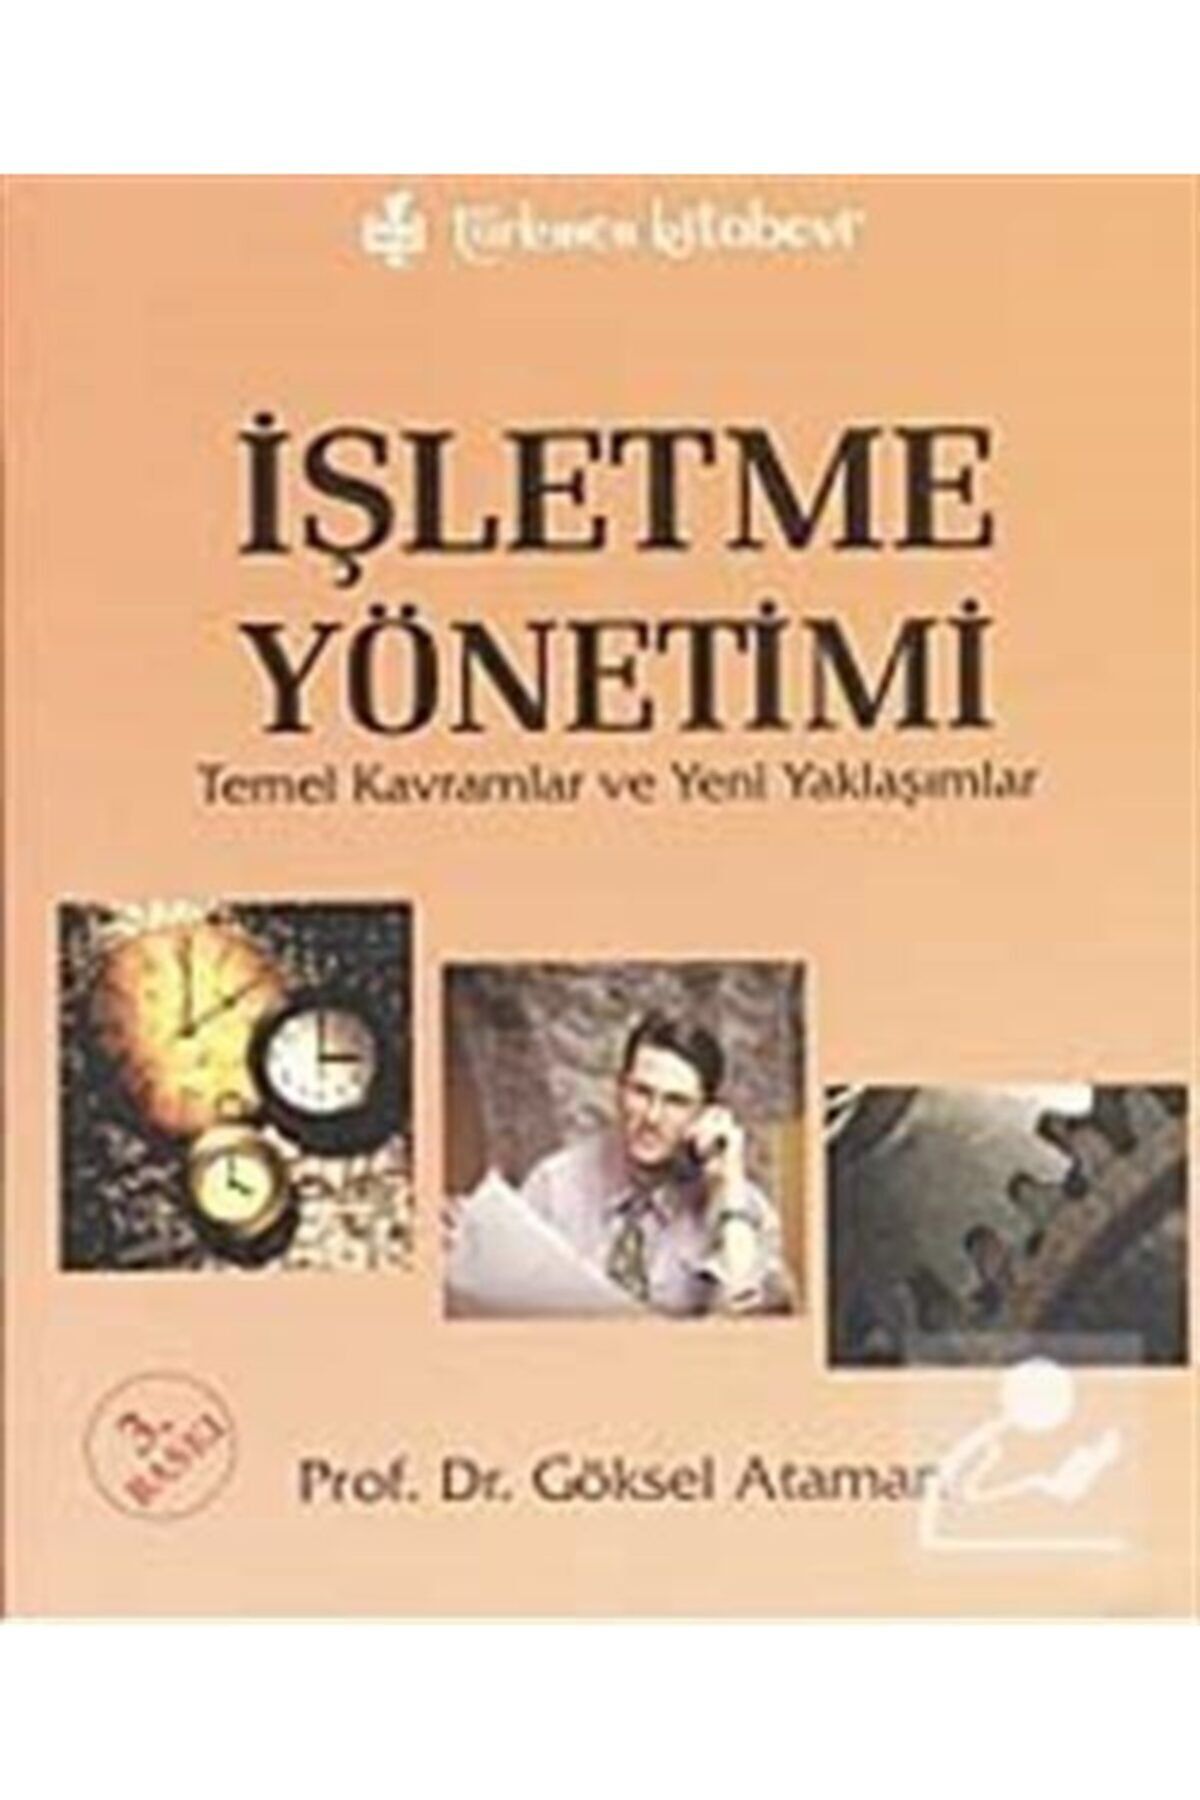 Türkmen Kitabevi Işletme Yönetimi & Temel Kavramlar Ve Yeni Yaklaşımlar